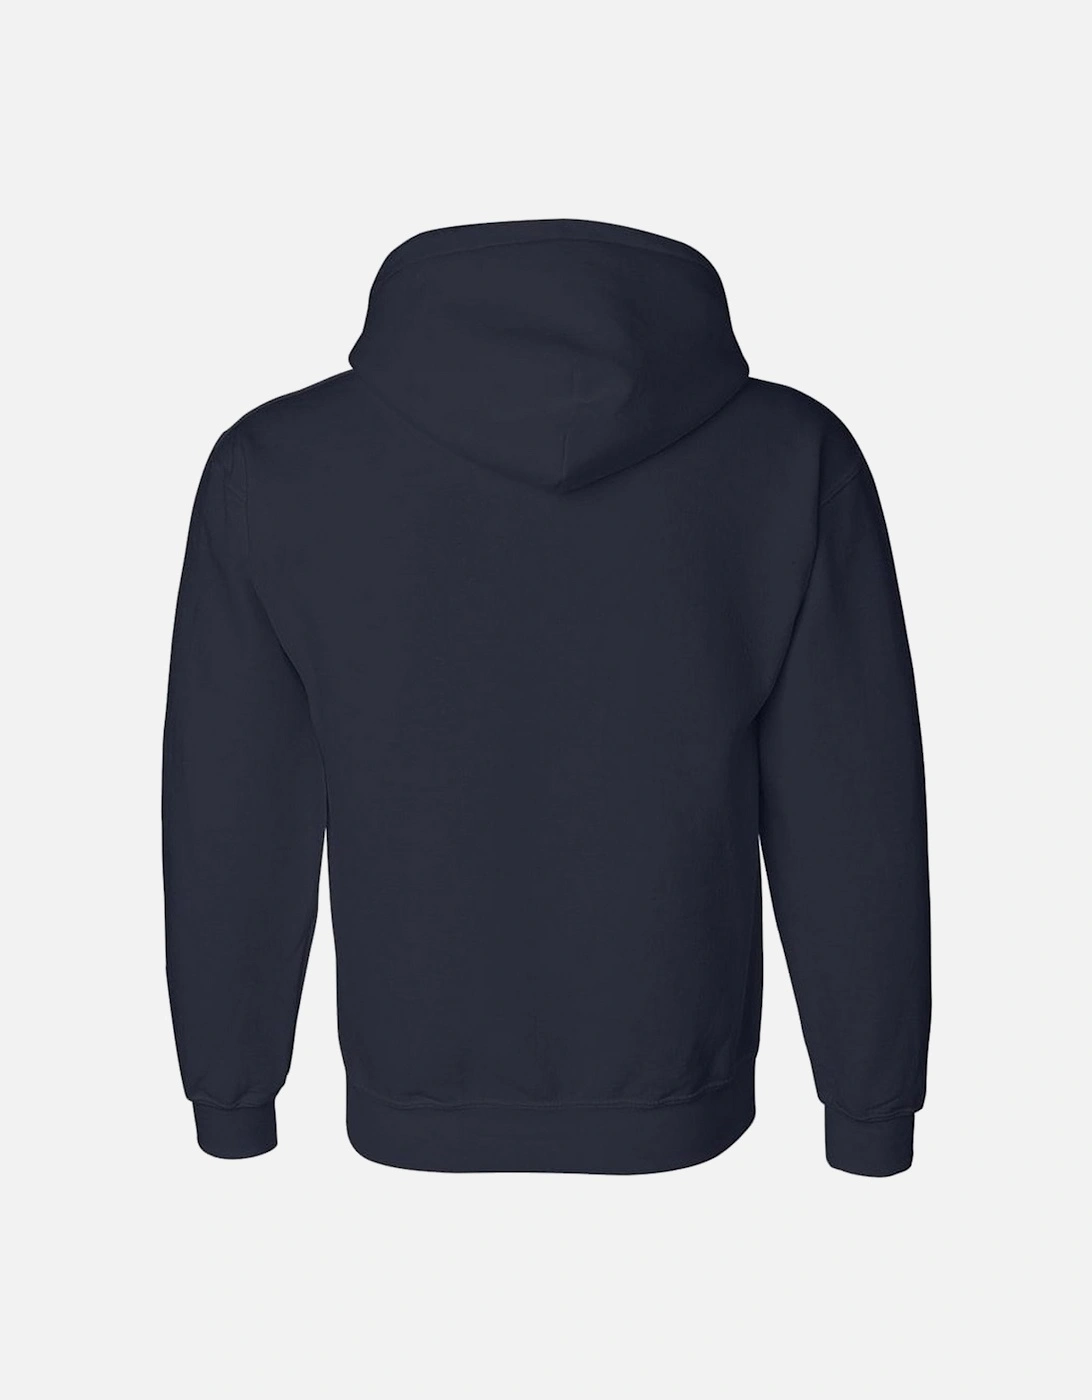 Heavyweight DryBlend Adult Unisex Hooded Sweatshirt Top / Hoodie (13 Colours)